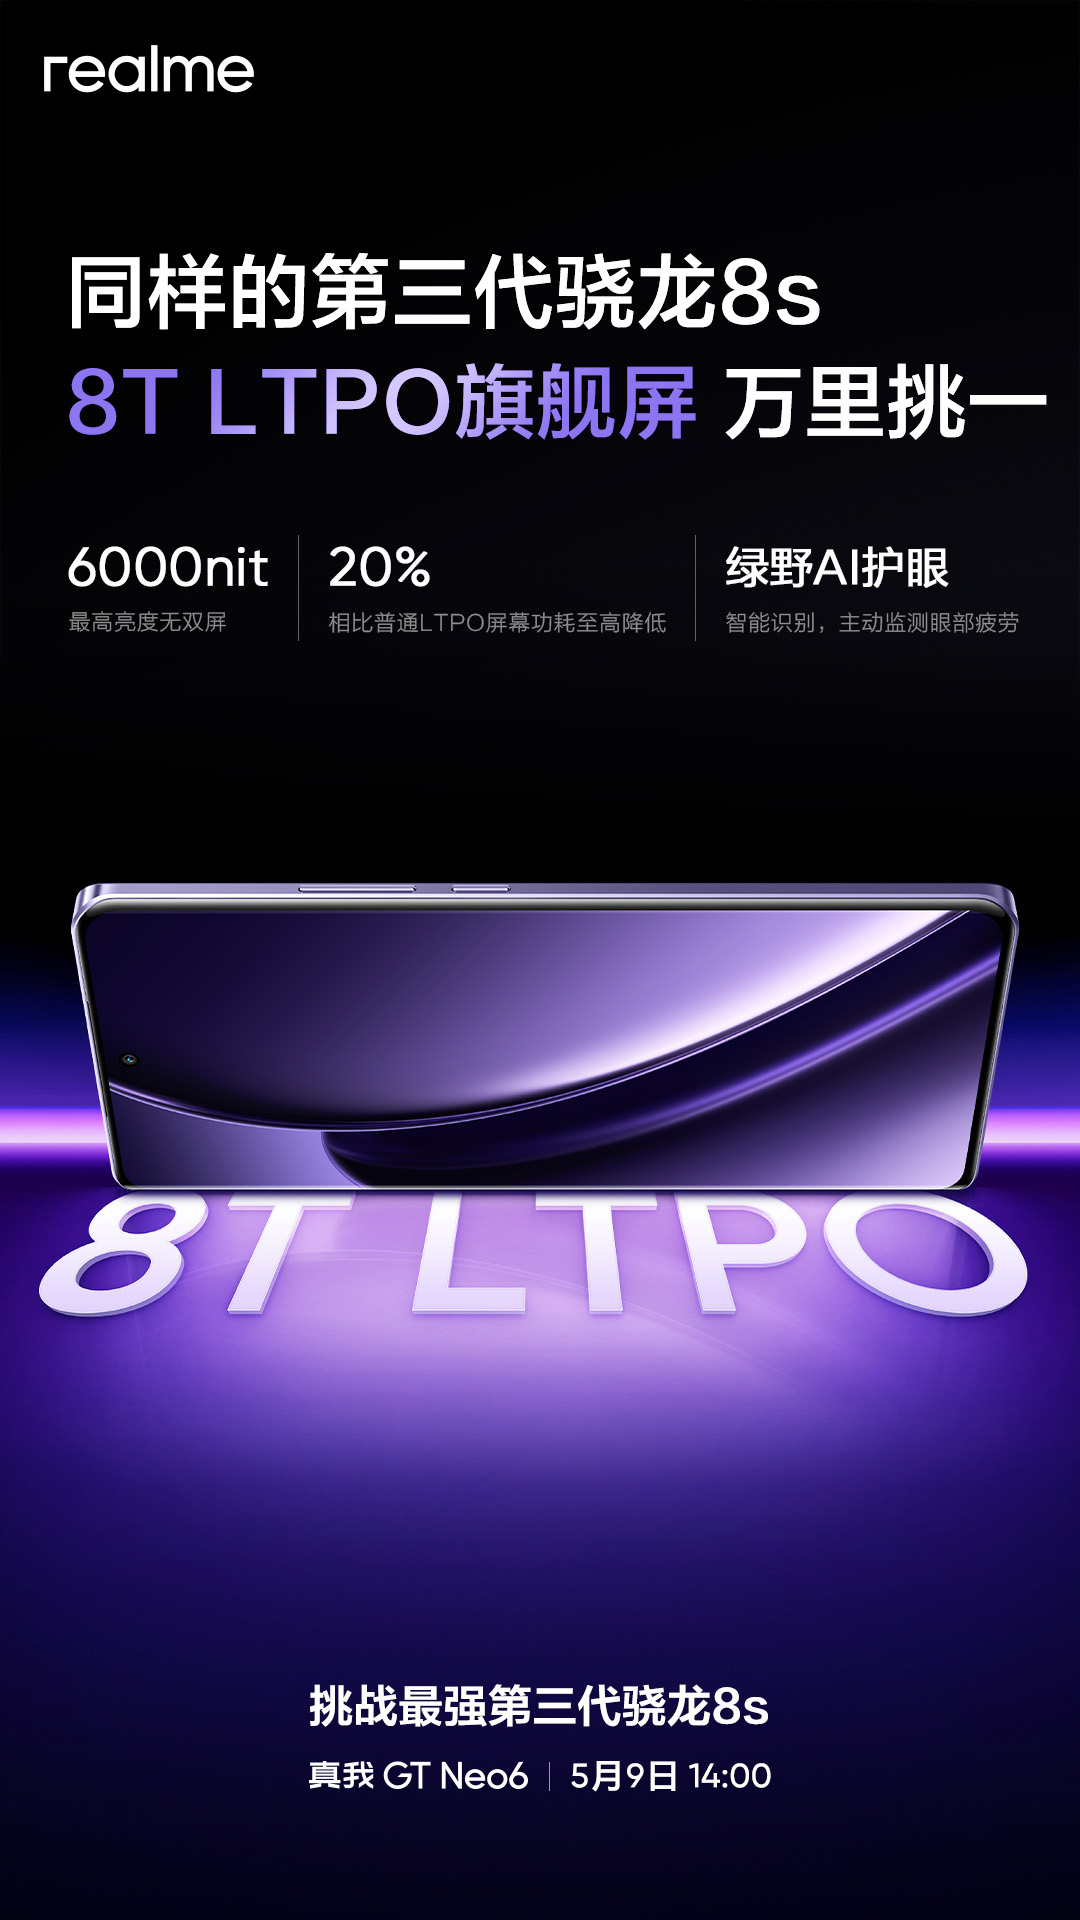 Realme GT Neo6 выйдет позднее на этой неделе в Китае